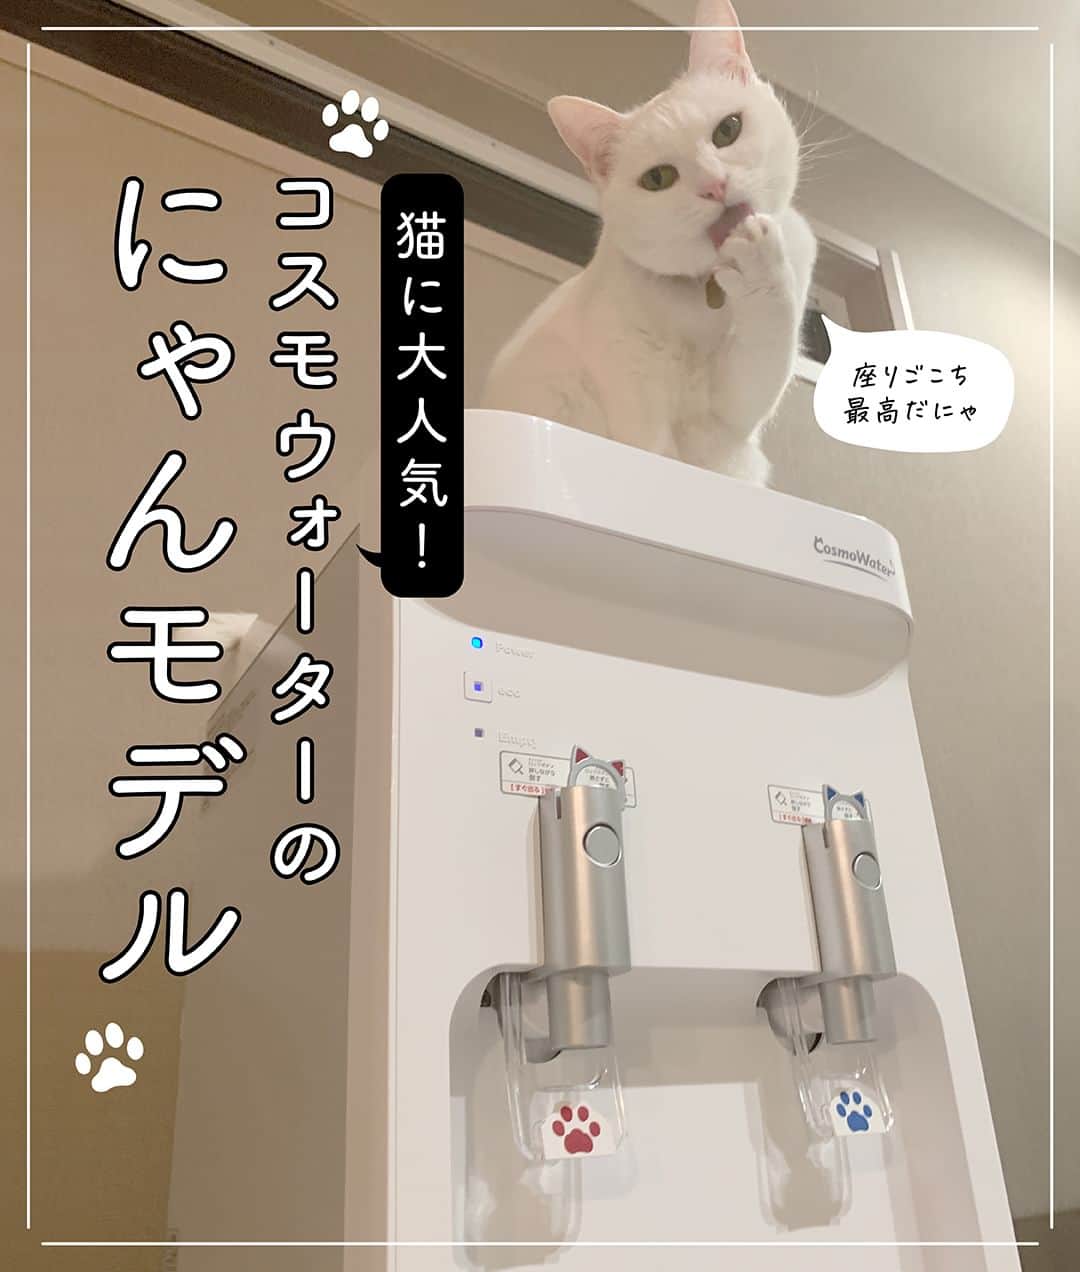 コスモウォーター【公式】のインスタグラム：「＼にゃんモデルを使っているご自宅をご紹介🐱🐾／  今回は、漫画家の宮路ひまさん( @shibainu_donguri )の smartプラス にゃんモデルを 使っている様子を紹介します✨  宮路さんのお気に入りはプニプニの肉球給水レバーと 猫耳のチャイルドロックキー🐱 猫好きにたまらないデザインです🐾✨  猫のすずらんちゃんも、にゃんモデルに興味津々👀 ボトルの入っているダンボールも 遊び場になっているようです💙  可愛いだけじゃなく、冷水やお湯がすぐに出るので 赤ちゃんのミルク作りや家事の時短にも 大活躍しているそうです！  実はこのにゃんモデル。2/22の猫の日に、 大好評につき定番化が決定🎉 定番化を記念してプレゼントキャンペーンを開催しています✨  新規ご契約いただいた方全員にもれなく猫グッズが当たる！ 何が当たるかわからにゃい！？ お楽しみグッズをプレゼント！ さらに、総額100万円分のデジタルギフトカードを抽選でプレゼントいたします✨  また、他社ウォーターサーバーから当社ウォーターサーバーにのりかえると、もれなく全員に「現金5,000円」をキャッシュバック！うれしい特典が最大3つもついてきます✨  キャンペーン期間は2023年3月31日（金）まで。 詳しくは、プロフィールから公式WEBサイトを タップしてCHECKしてくださいね🐱✨  #コスモウォーター #コスモウォーターのある暮らし #にゃんモデル #ウォーターサーバー #ウォーターサーバーのある生活 #ウォーターサーバー検討中 #天然水 #美味しい水 #QOL向上 #生活の質 #ていねいな暮らし #シンプルな暮らし #白湯 #白湯生活 #水分補給 #暮らしのアイデア #暮らしを楽しむ #便利グッズ #ねこ漫画 #猫漫画 #猫まんが #猫のいる風景 #コミックエッセイ #ねこら部 #ねこ好き #猫グッズ #猫可愛い #にゃんすたぐらむ #ねこすたぐらむ #ねこ部」